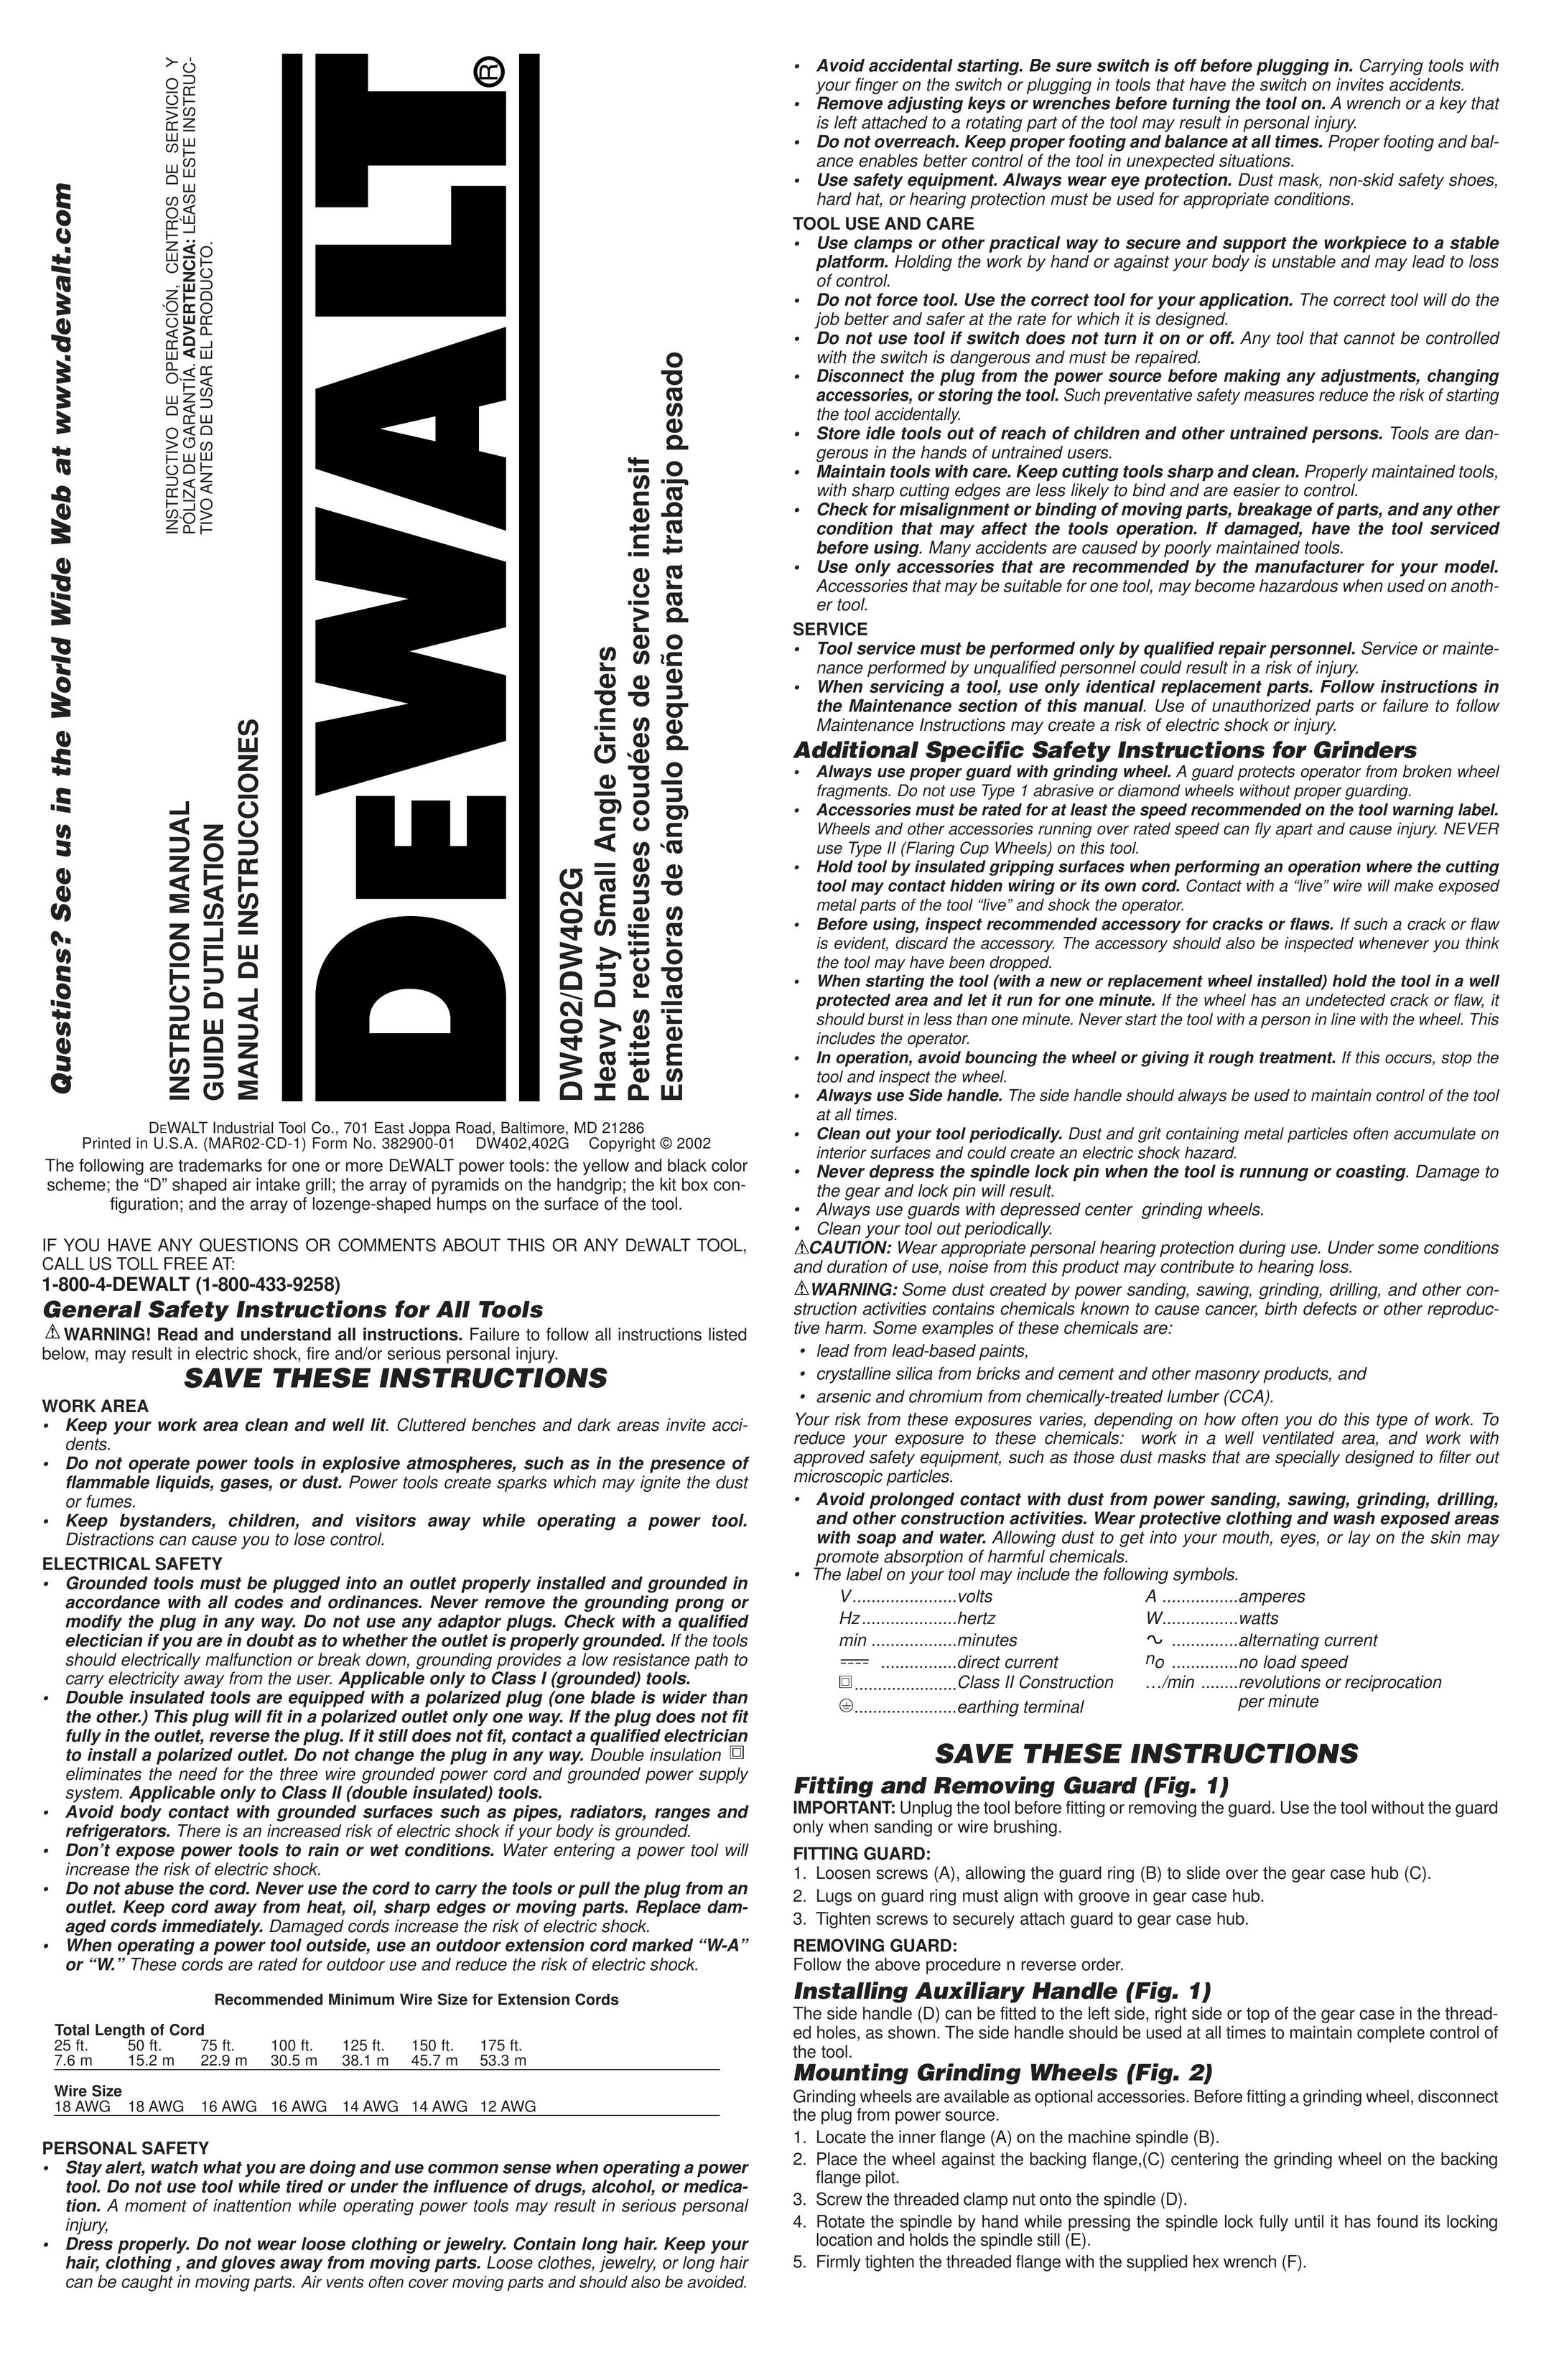 DeWalt DW402G Grinder User Manual